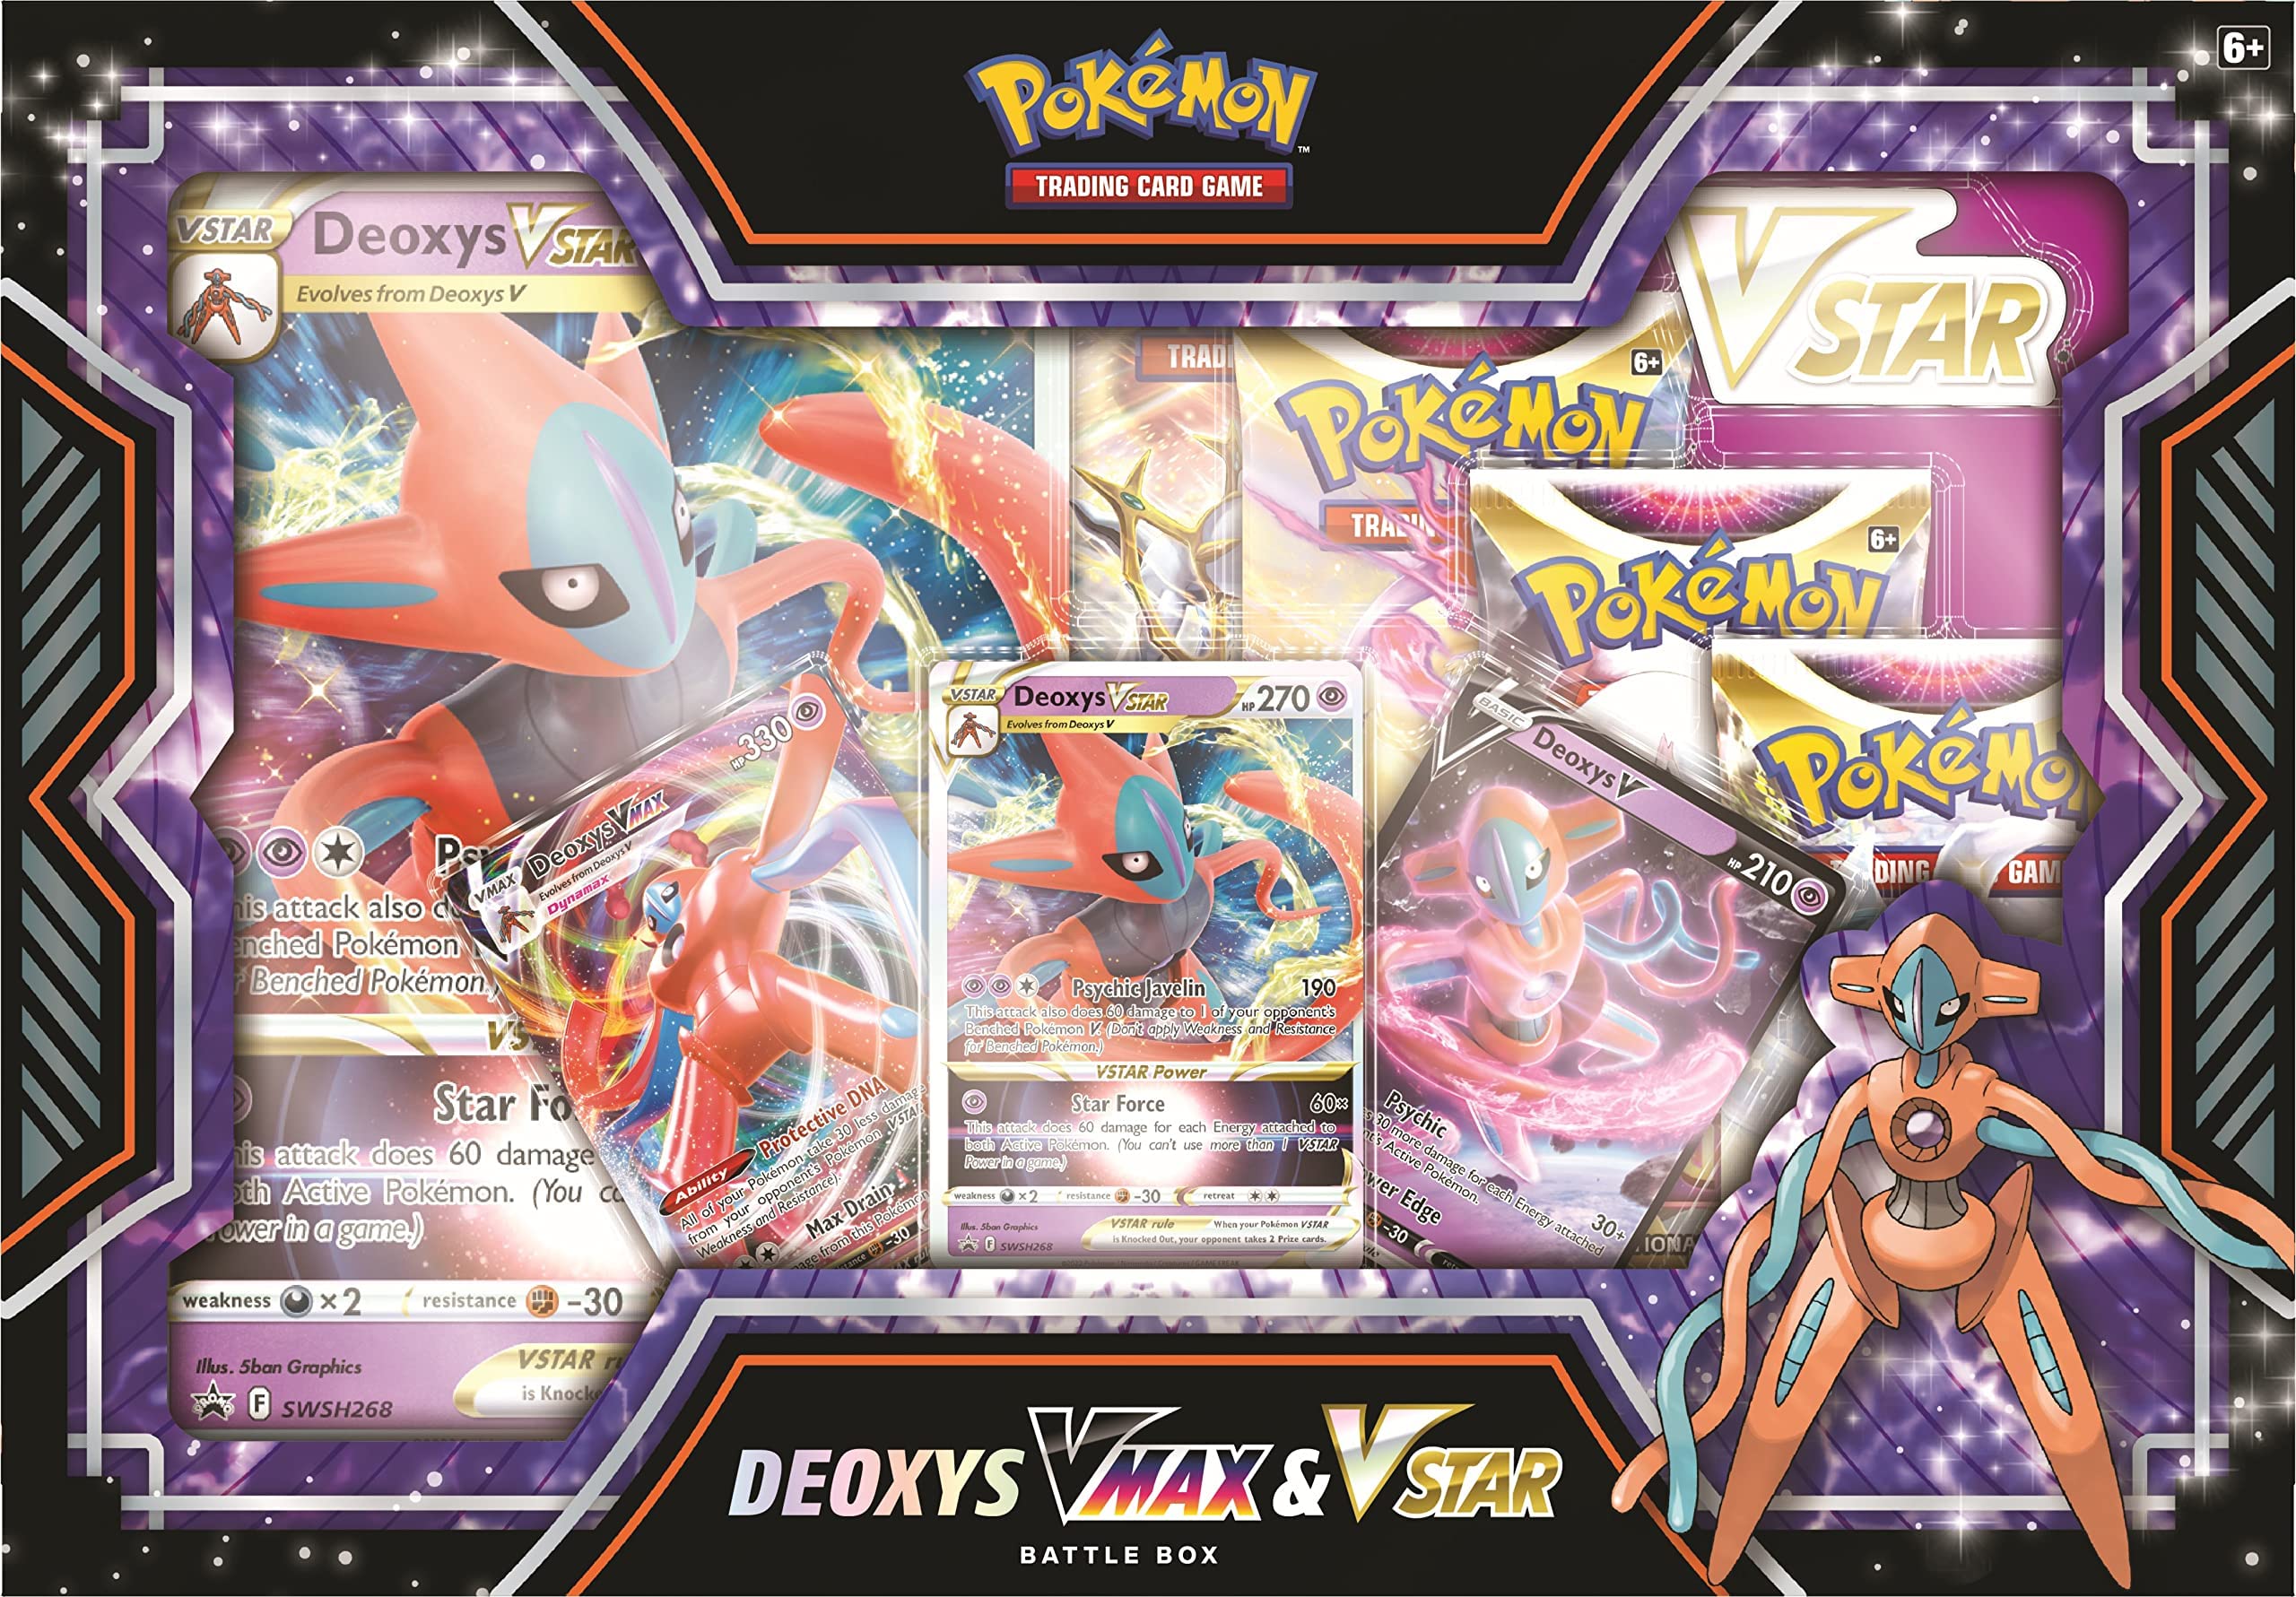 Pokémon TCG: Deoxys/Zeraora VMAX & VSTAR Battle Box